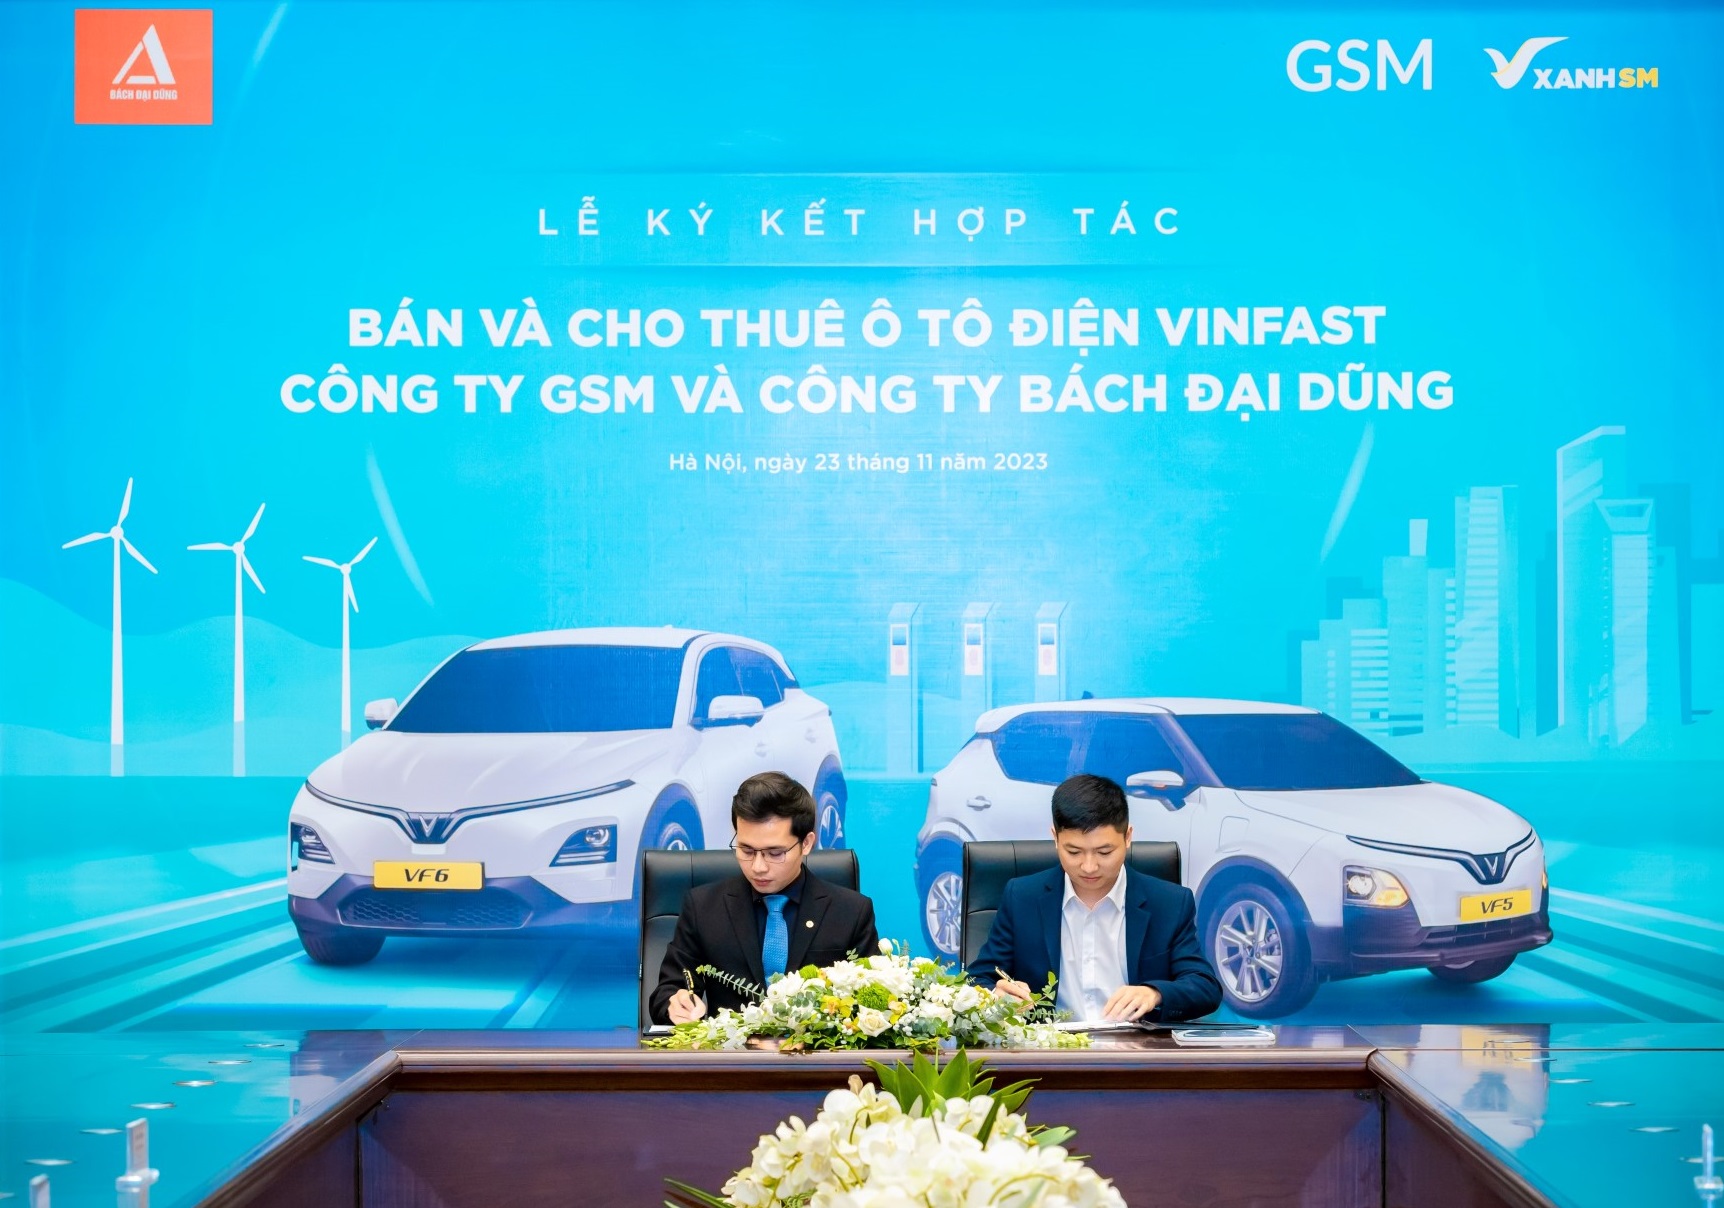 Hãng taxi thuần điện đầu tiên tại Hà Tĩnh mua và thuê 300 ô tô điện VinFast từ GSM- Ảnh 1.